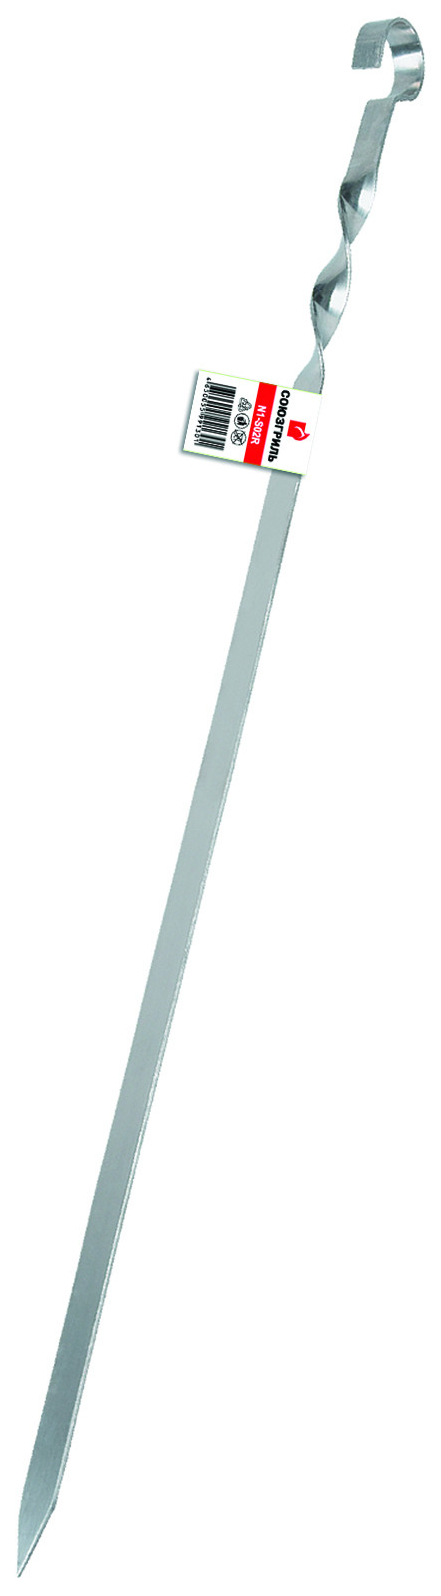 Шампур Союзгриль N1-S02R плоский длина 55 см х 1 шт